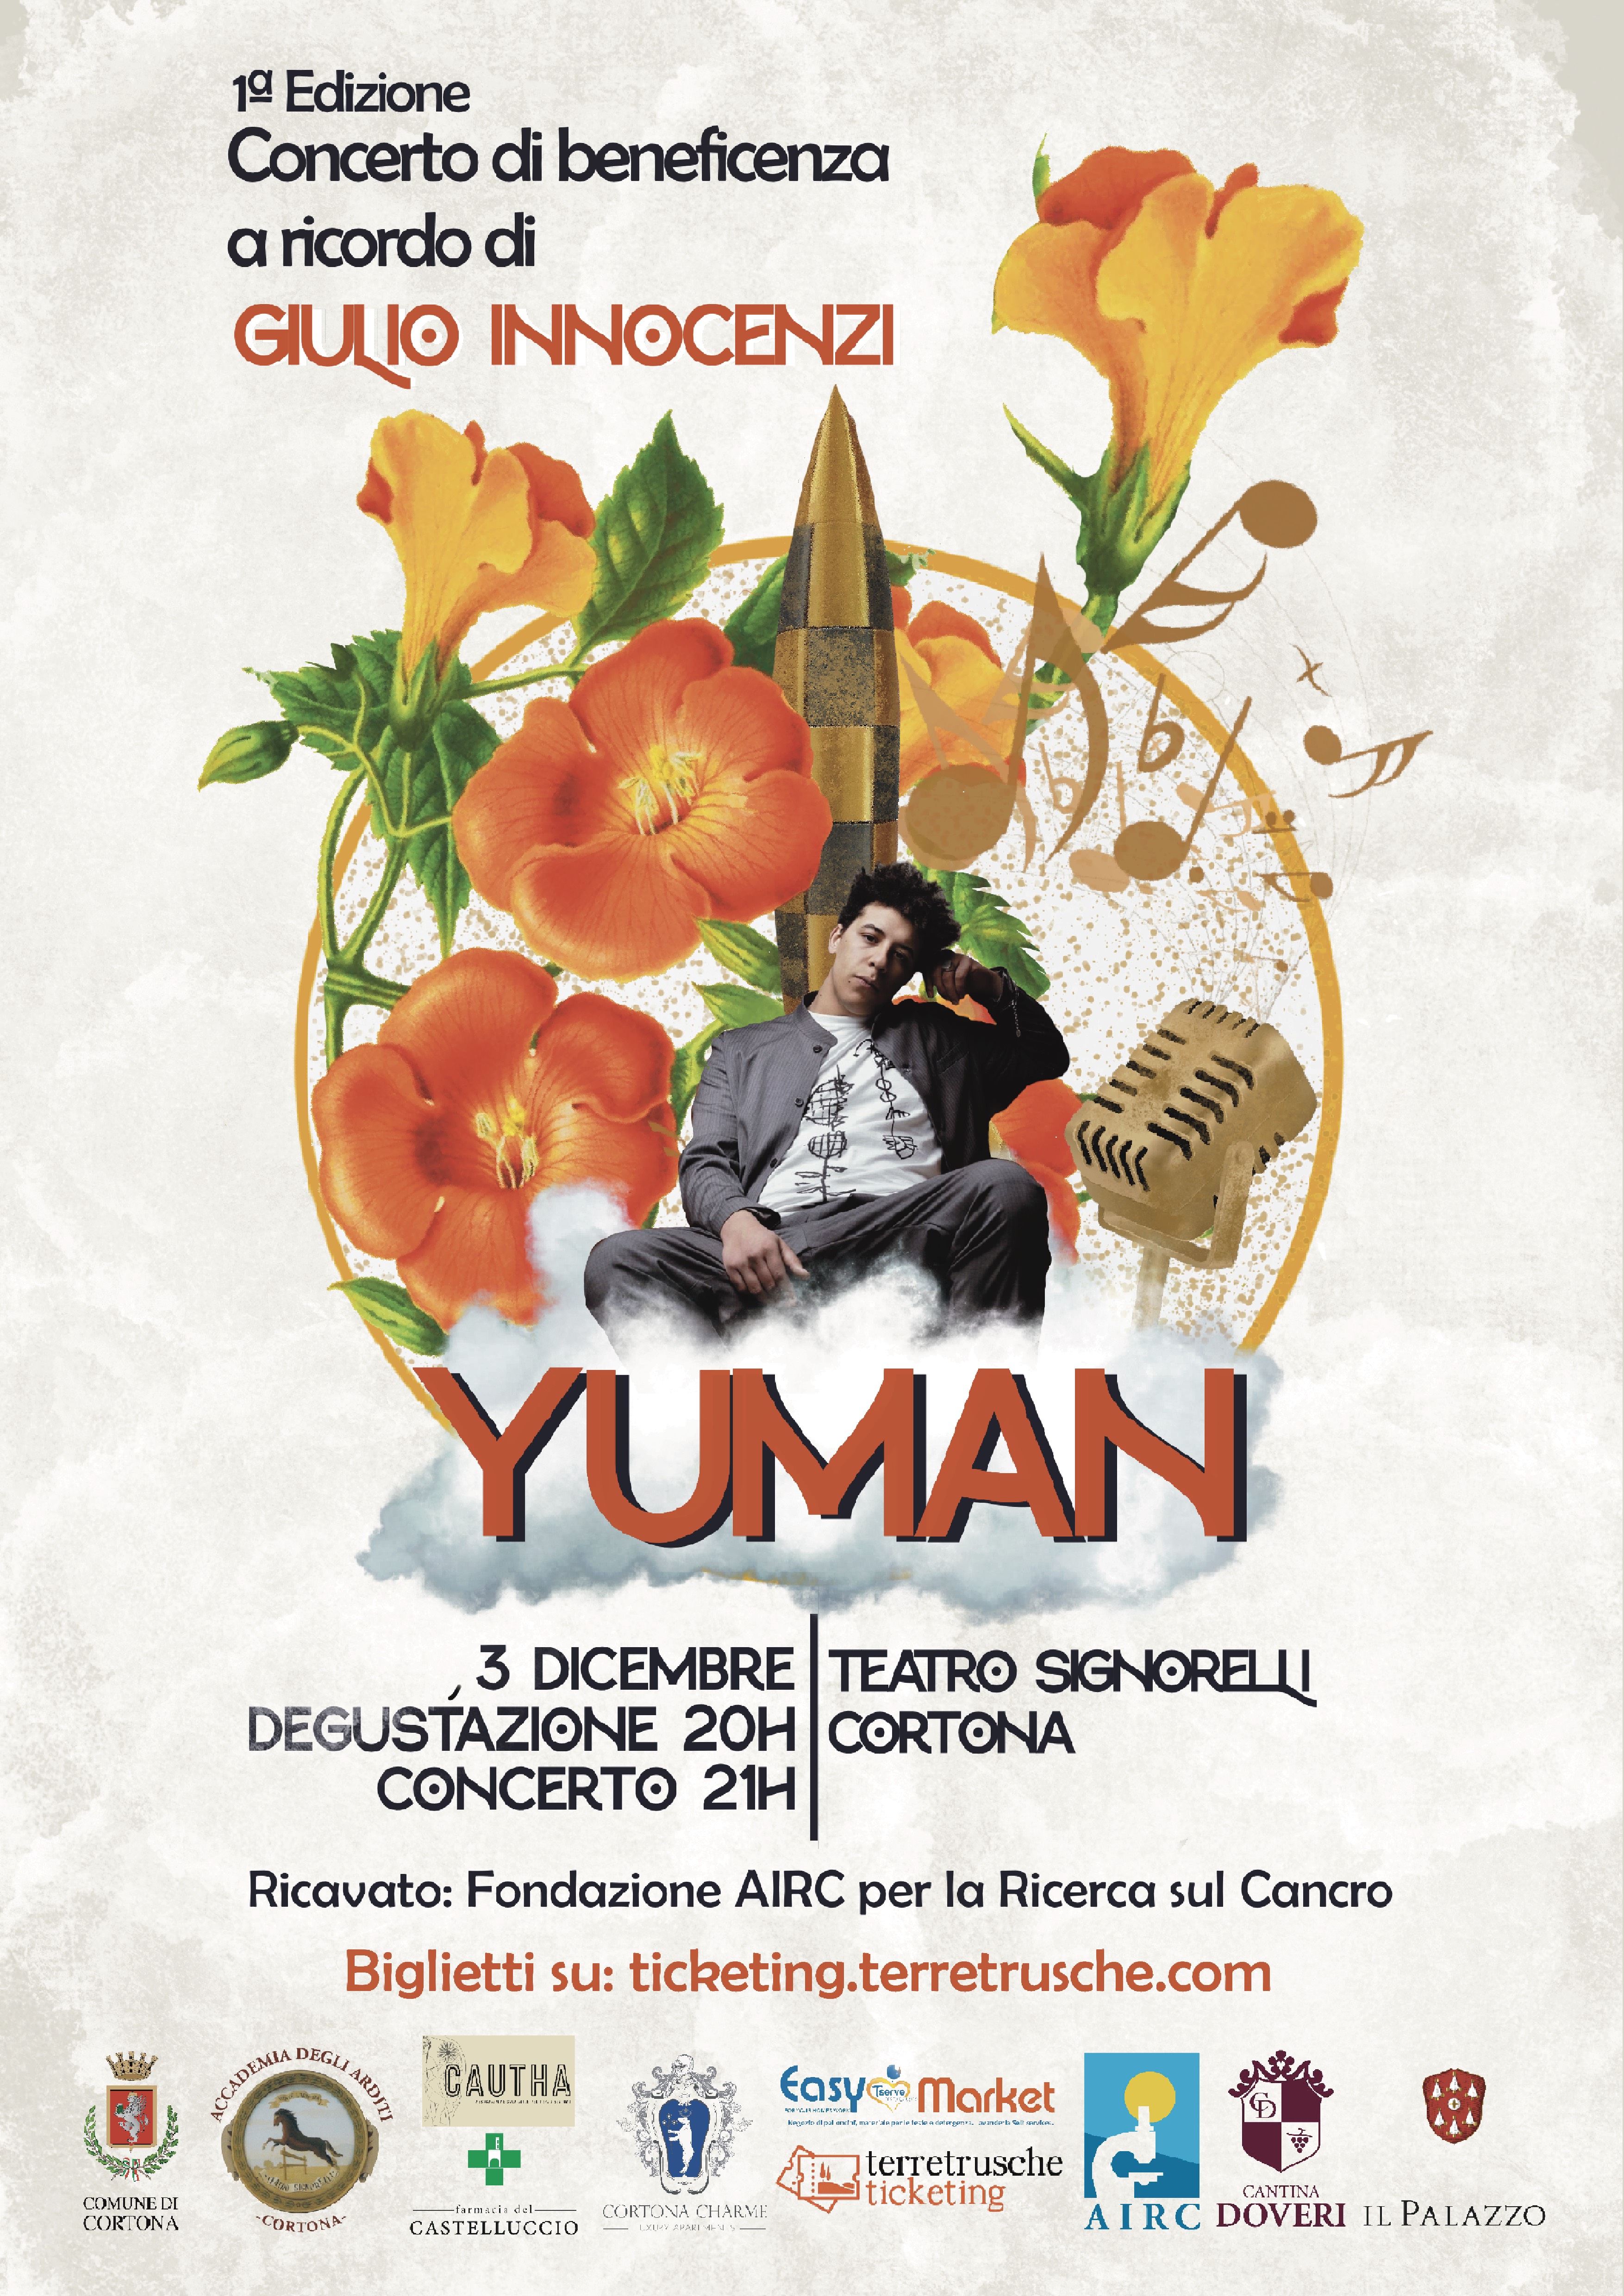 Yuman in concerto, in memoria di Giulio Innocenzi